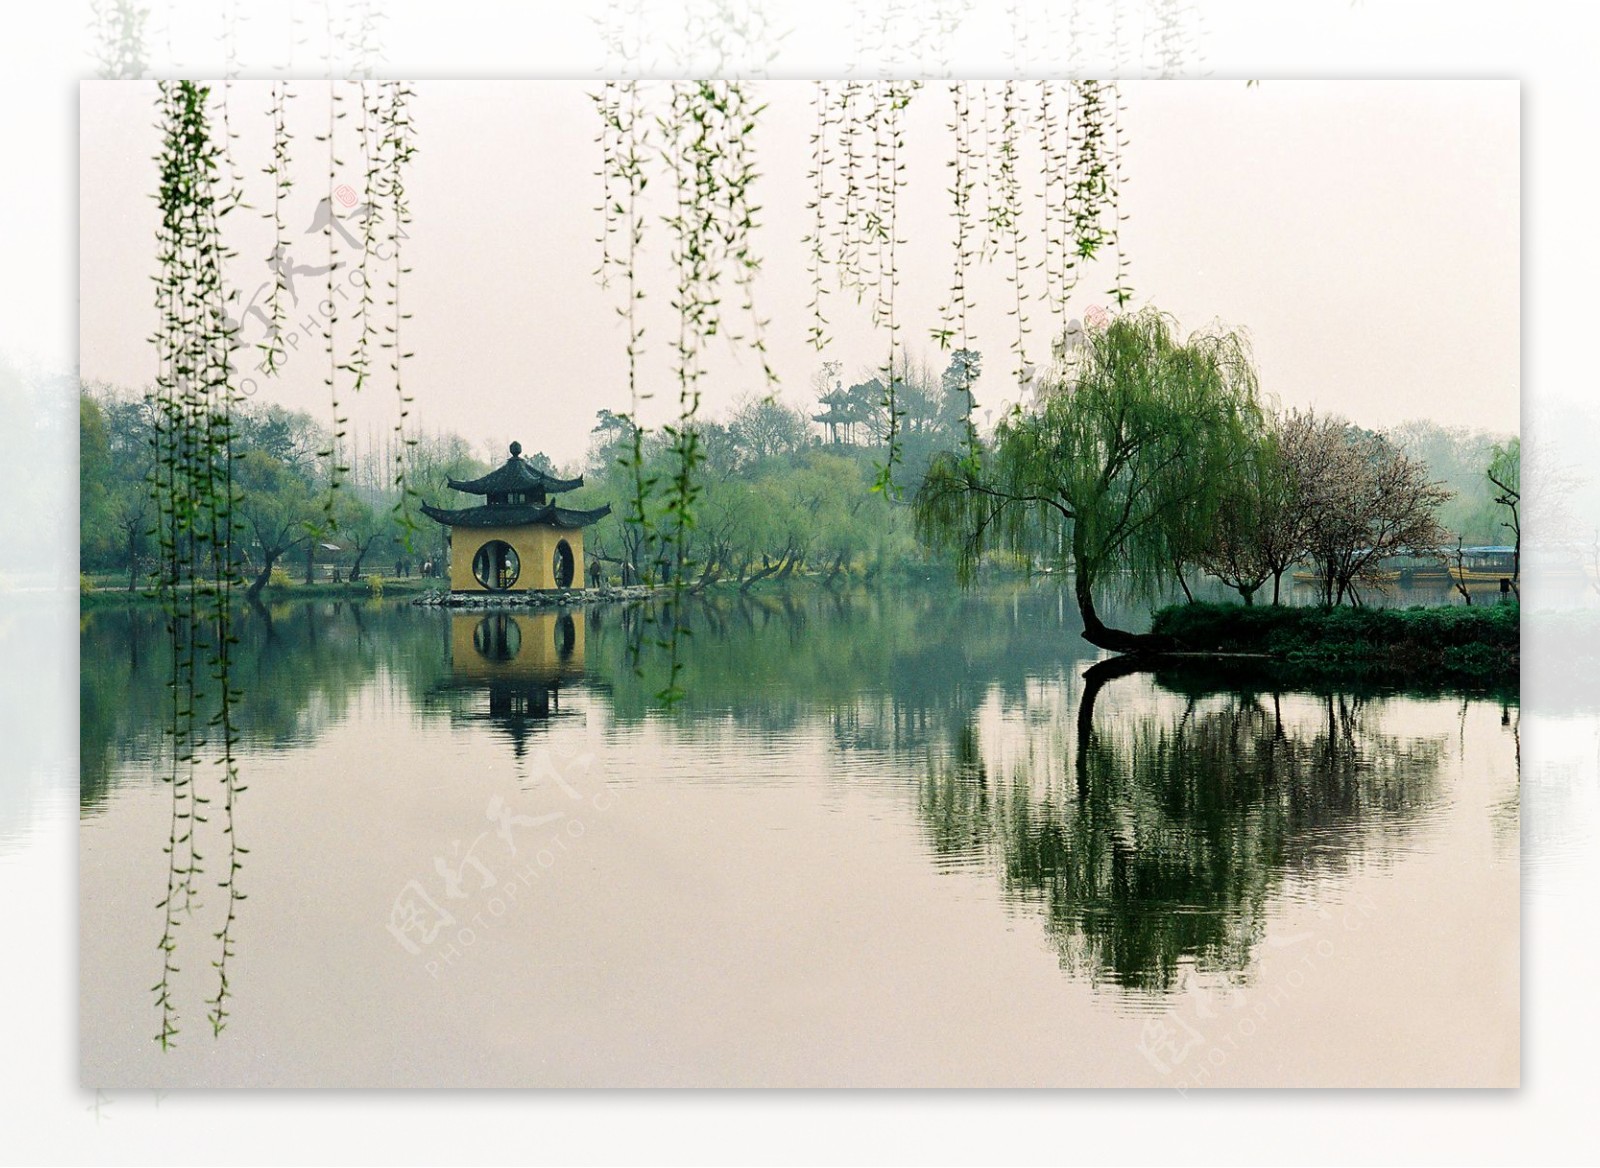 扬州瘦西湖春色图片